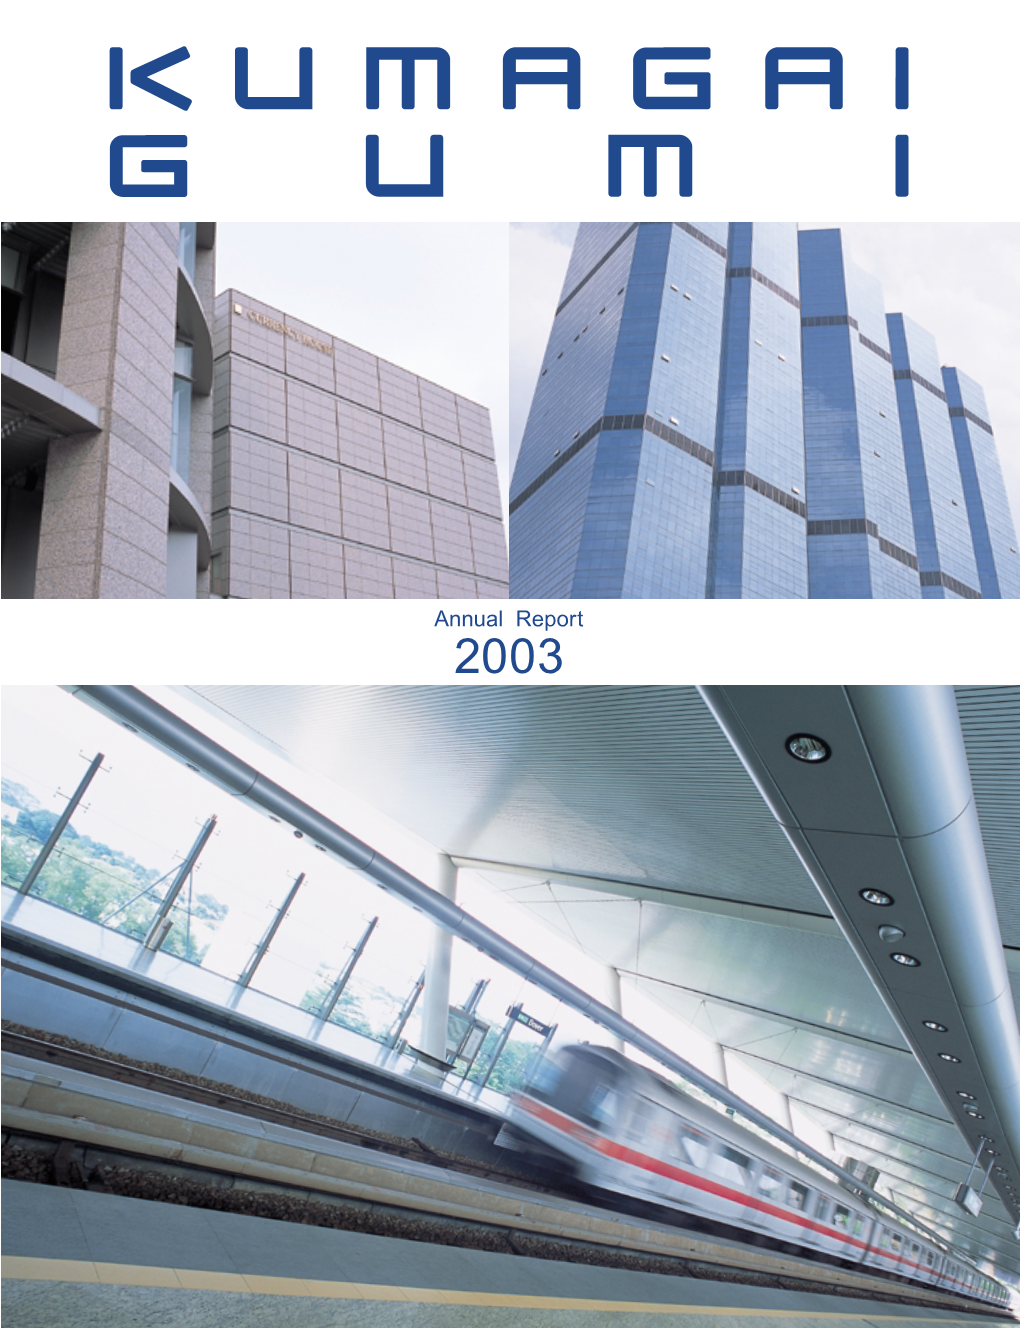 Annual Report 2003 the COMPANY